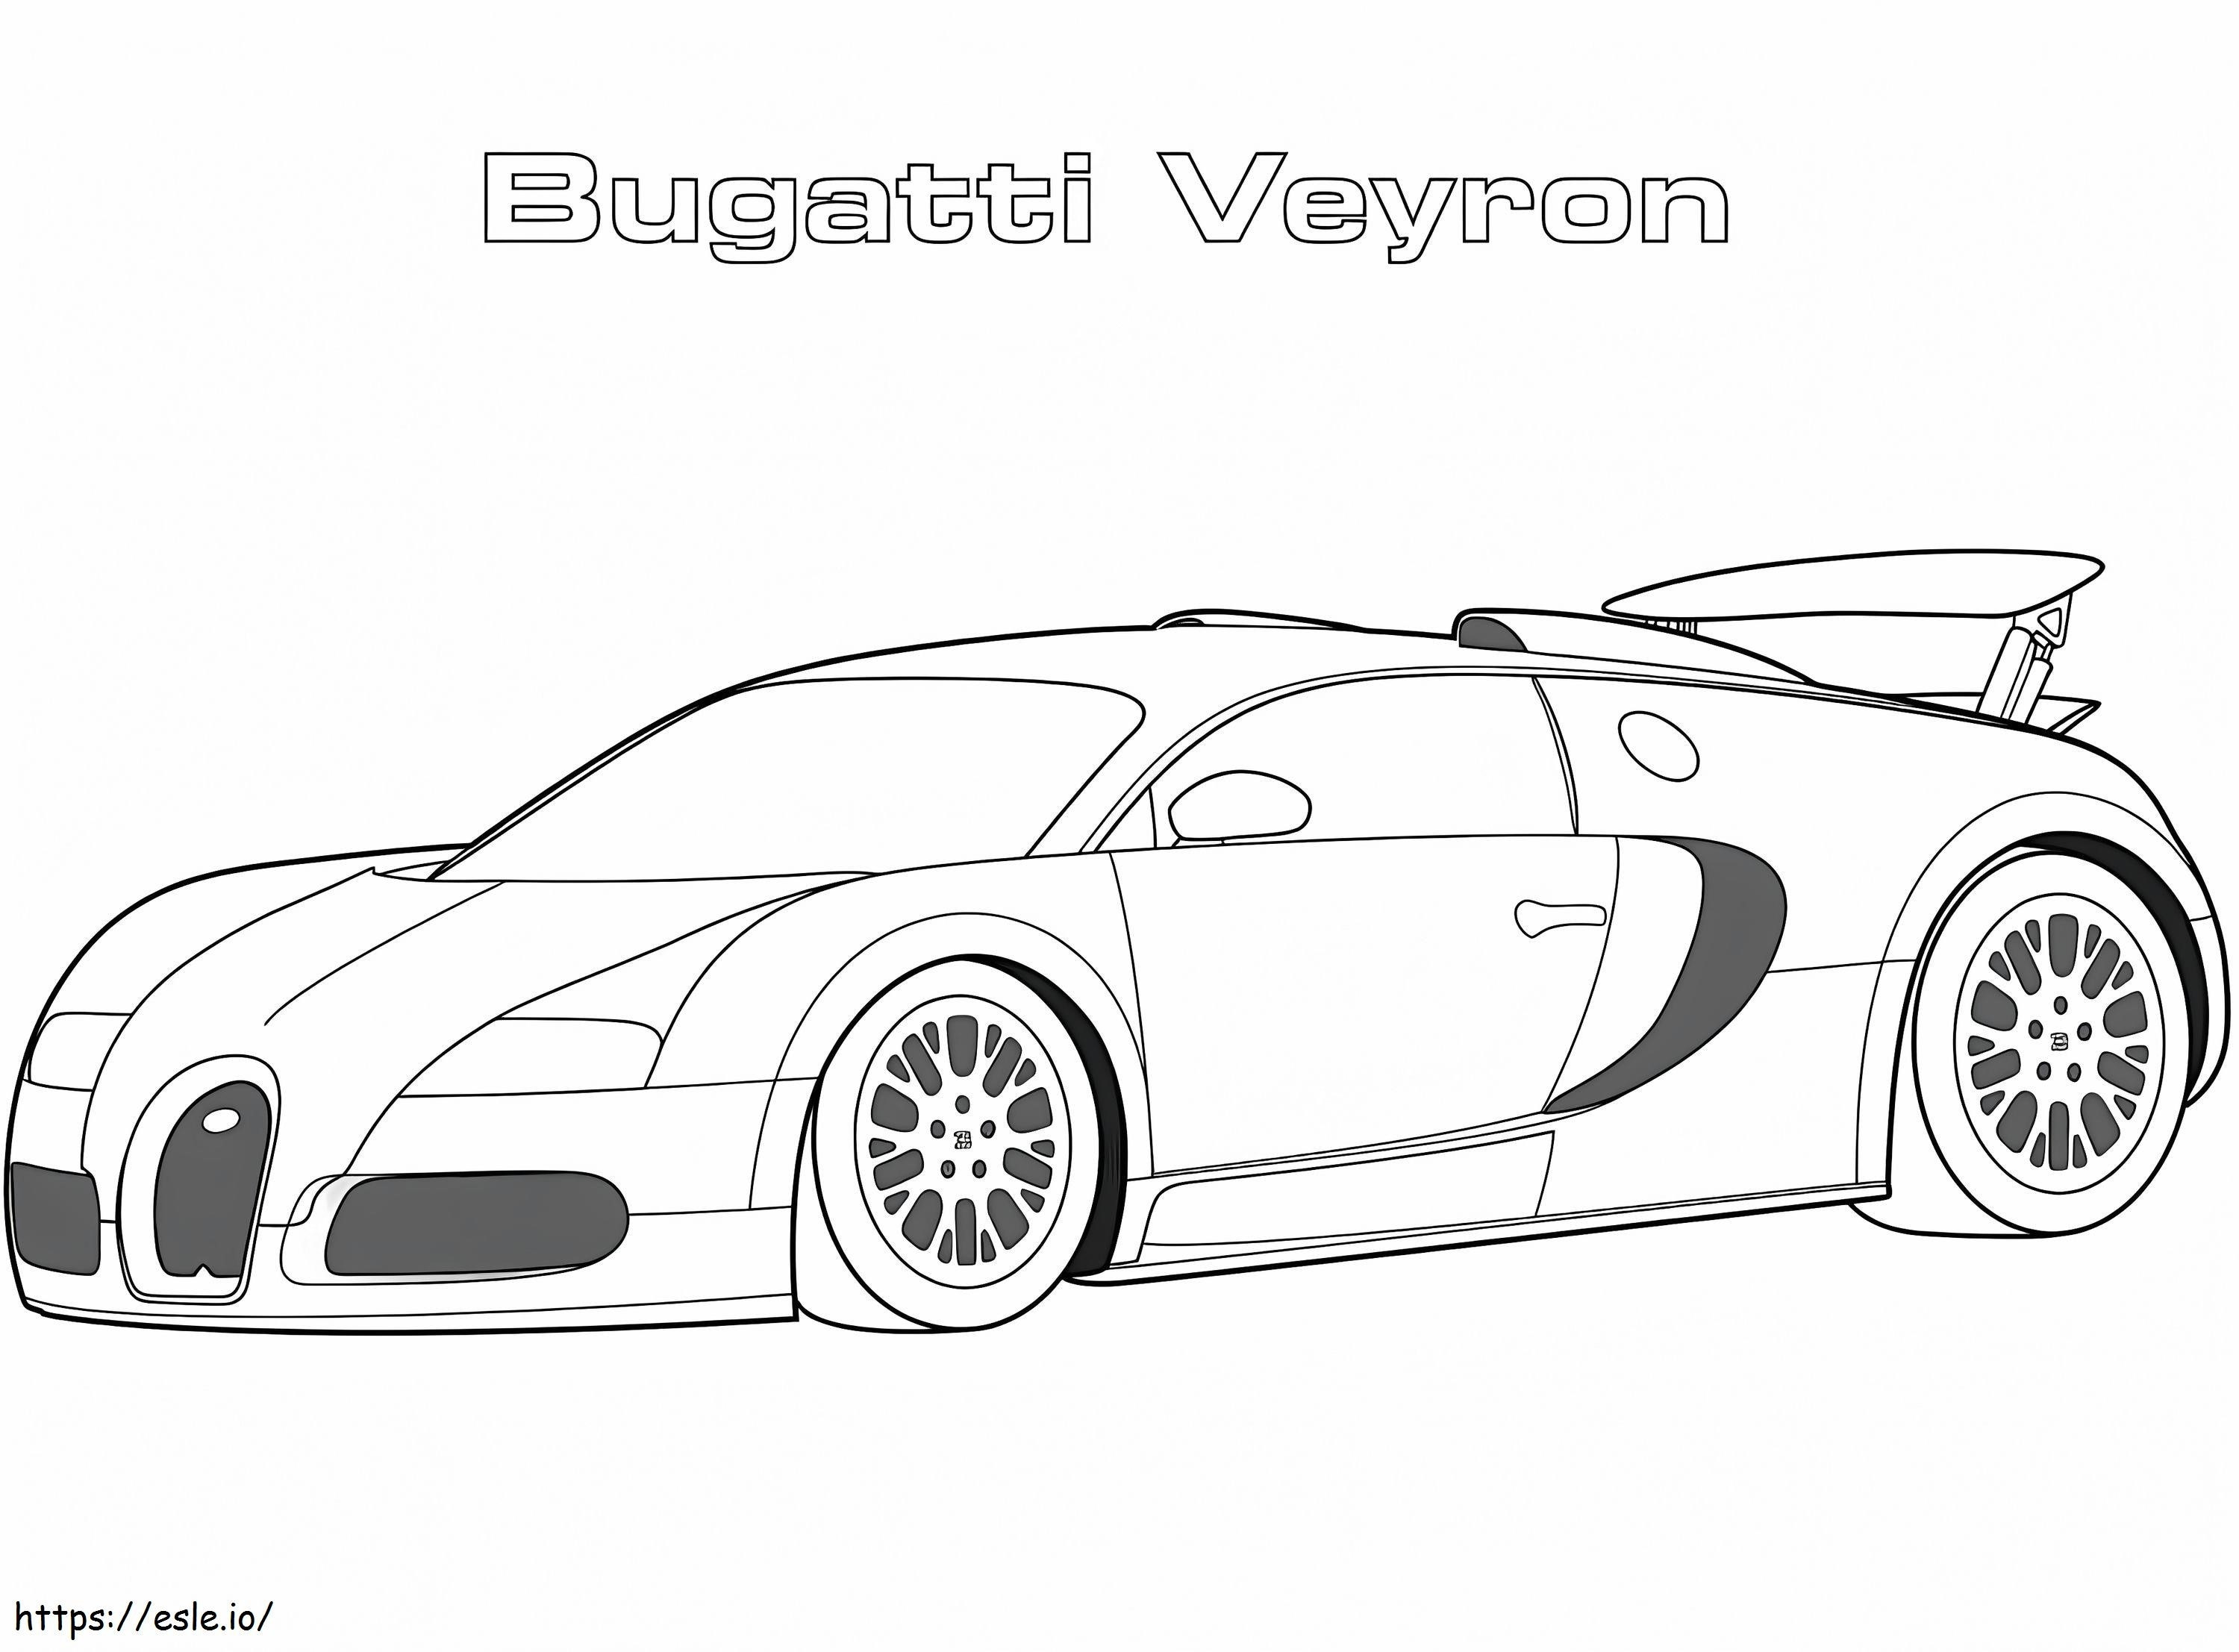 2005 Bugatti Veyron para colorear